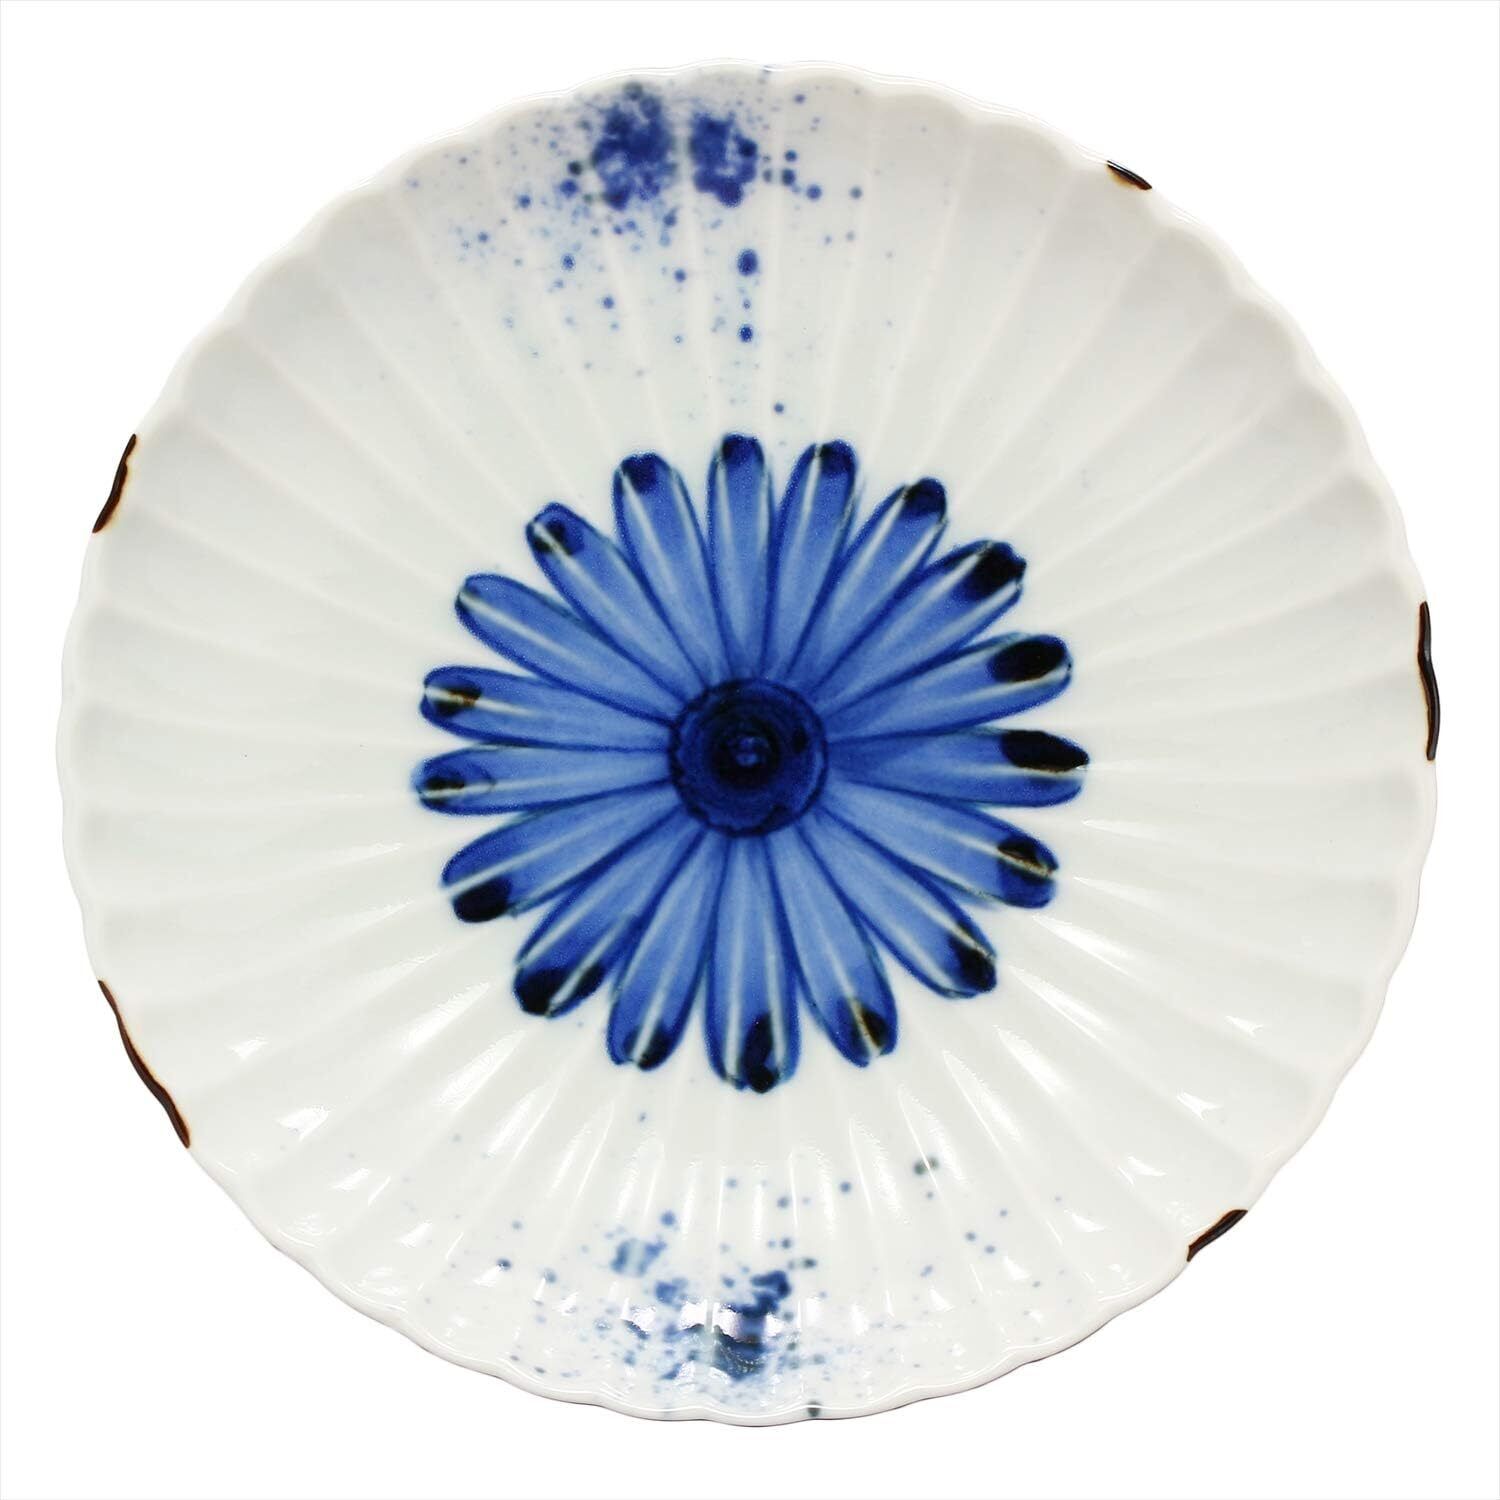 Hamato Medium Plate White 15.7cm Hasami Ware Chrysanthemum Painting 404177